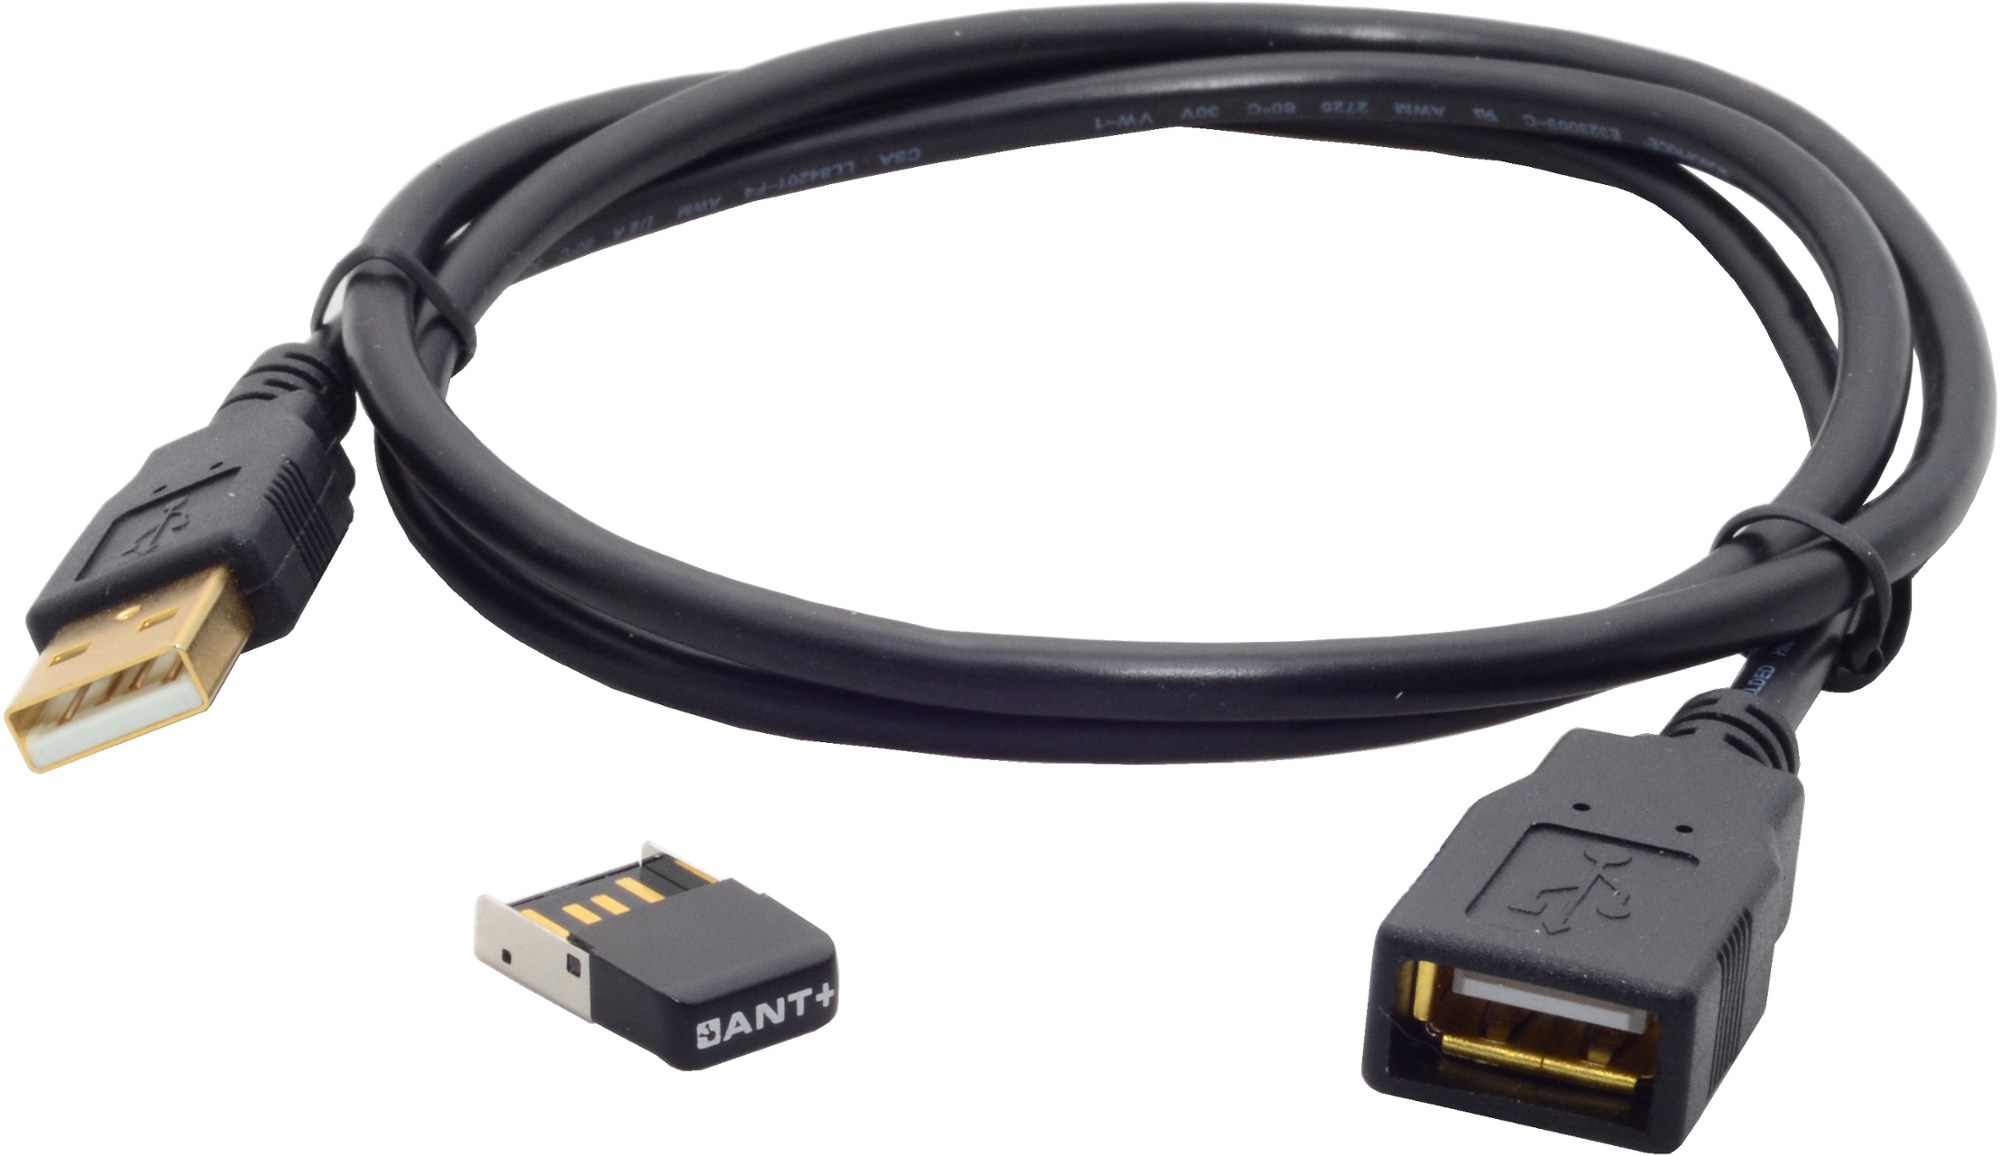 USB-адаптер ANT+ с удлинителем длиной 3 фута Wahoo Fitness, черный